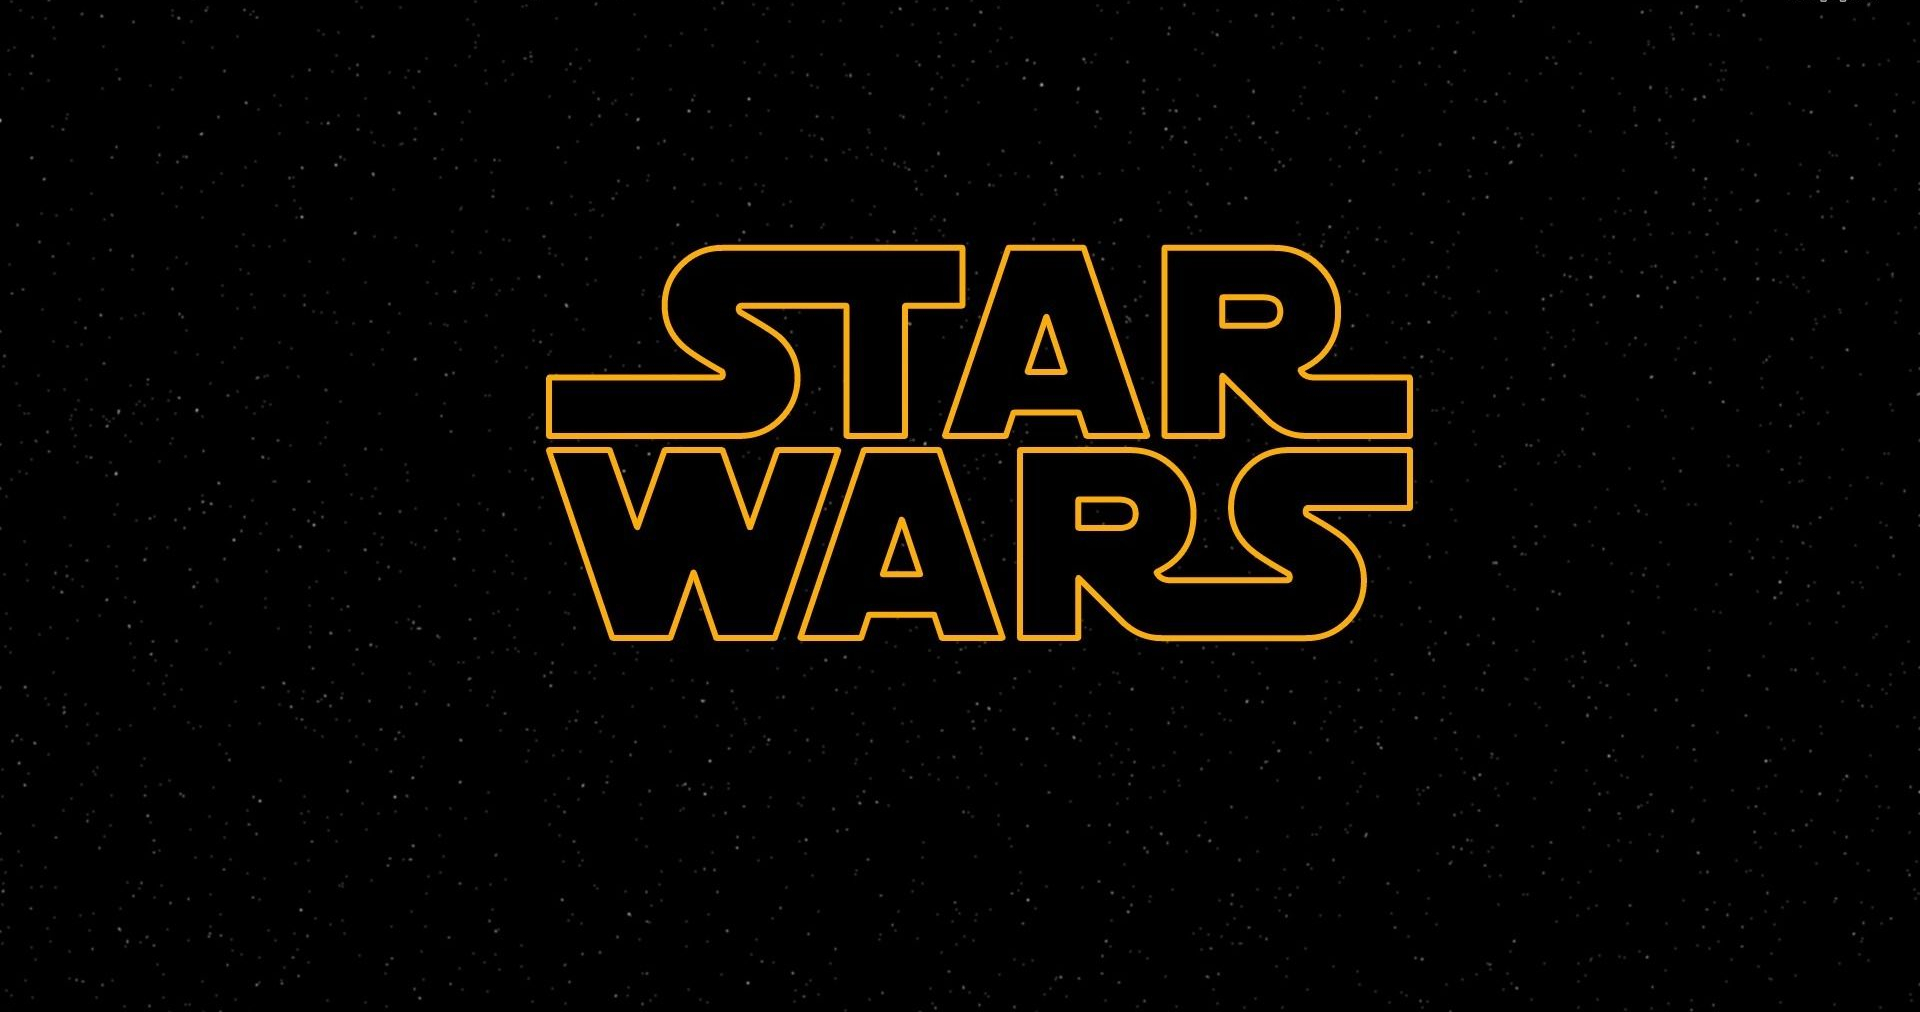 Star Wars: The Clone Wars film - Wikipedia